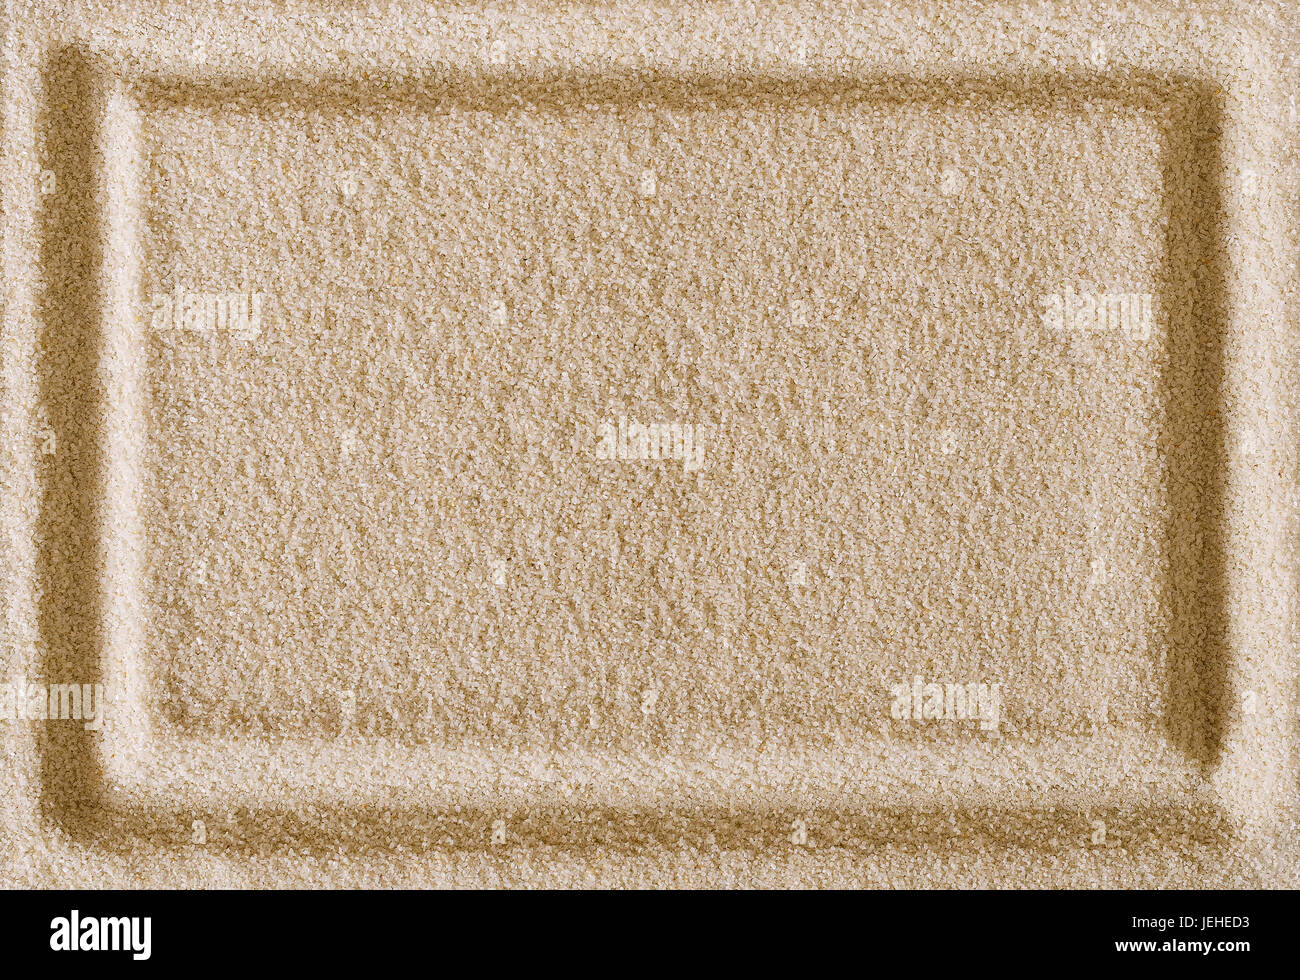 Rechteck Form Impressum in Sandoberfläche. Rechteckiger Rahmen in einer flachen Sand Gegend wie ein Rahmen und als Hintergrund verwenden. Makro-Foto. Stockfoto